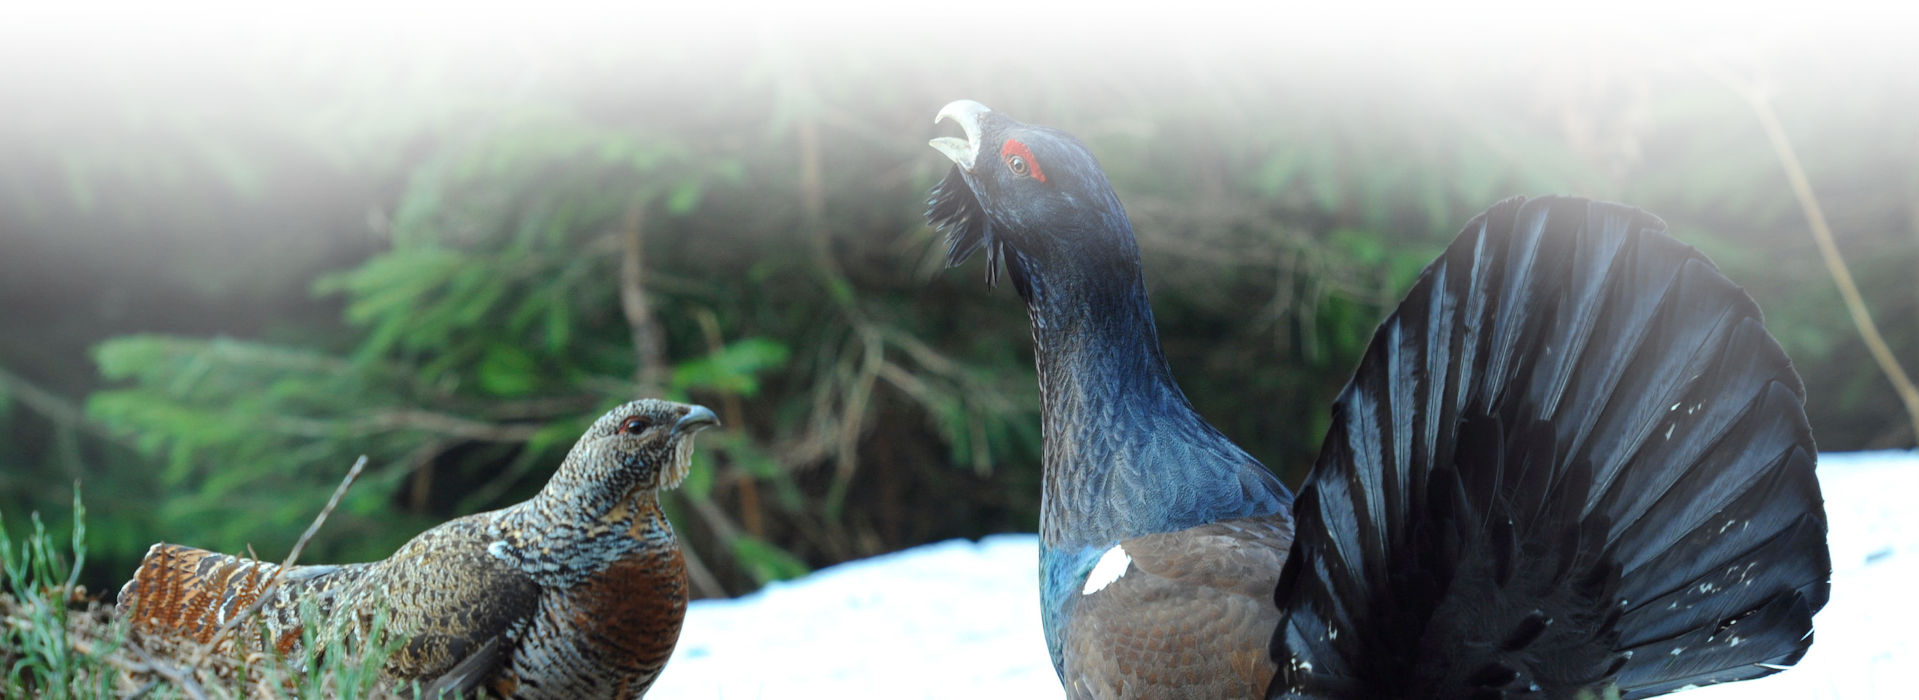 Ein großer, schwarz-blau gefiederter Hühnervogel mit gerecktem Hals und offenem Schnabel sowie gespreizten Schwanzfedern.